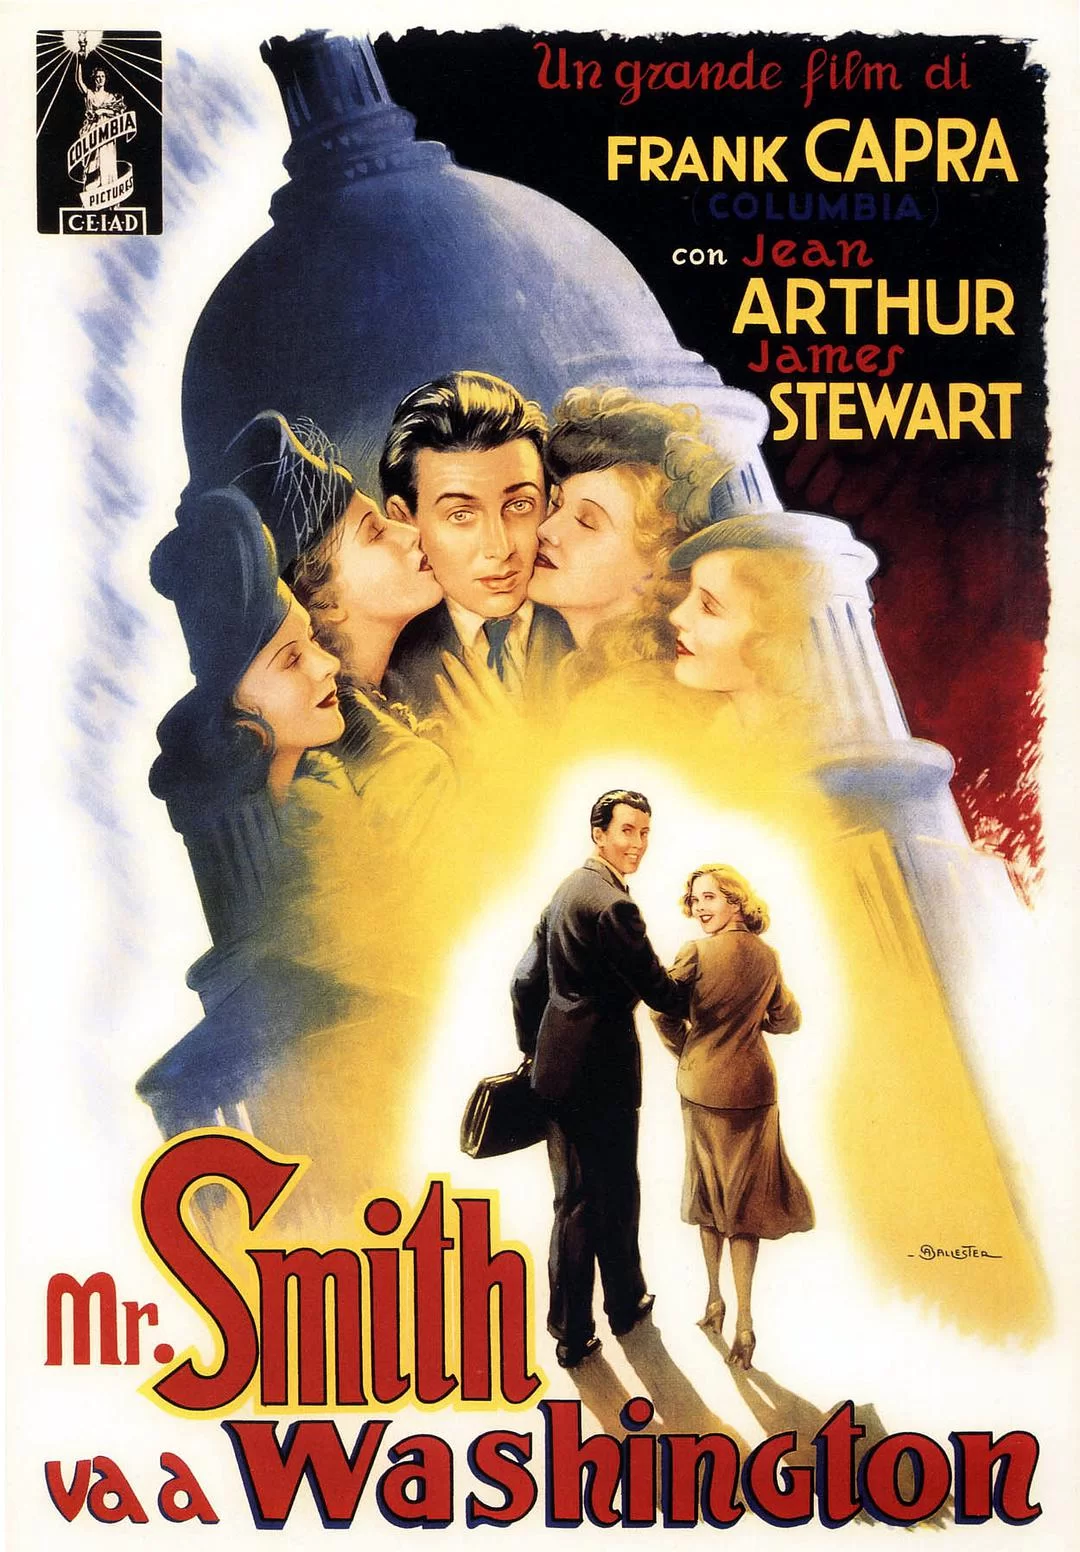 史密斯先生到华盛顿 蓝光原盘下载+高清MKV版/华盛顿政客(港) / 华府风云(台) / 史密斯游美京 / 史密斯先生上美京 / 民主万岁 / Frank Capra’s Mr. Smith Goes to Washington 1939 Mr. Smith Goes to Washington 53.2G